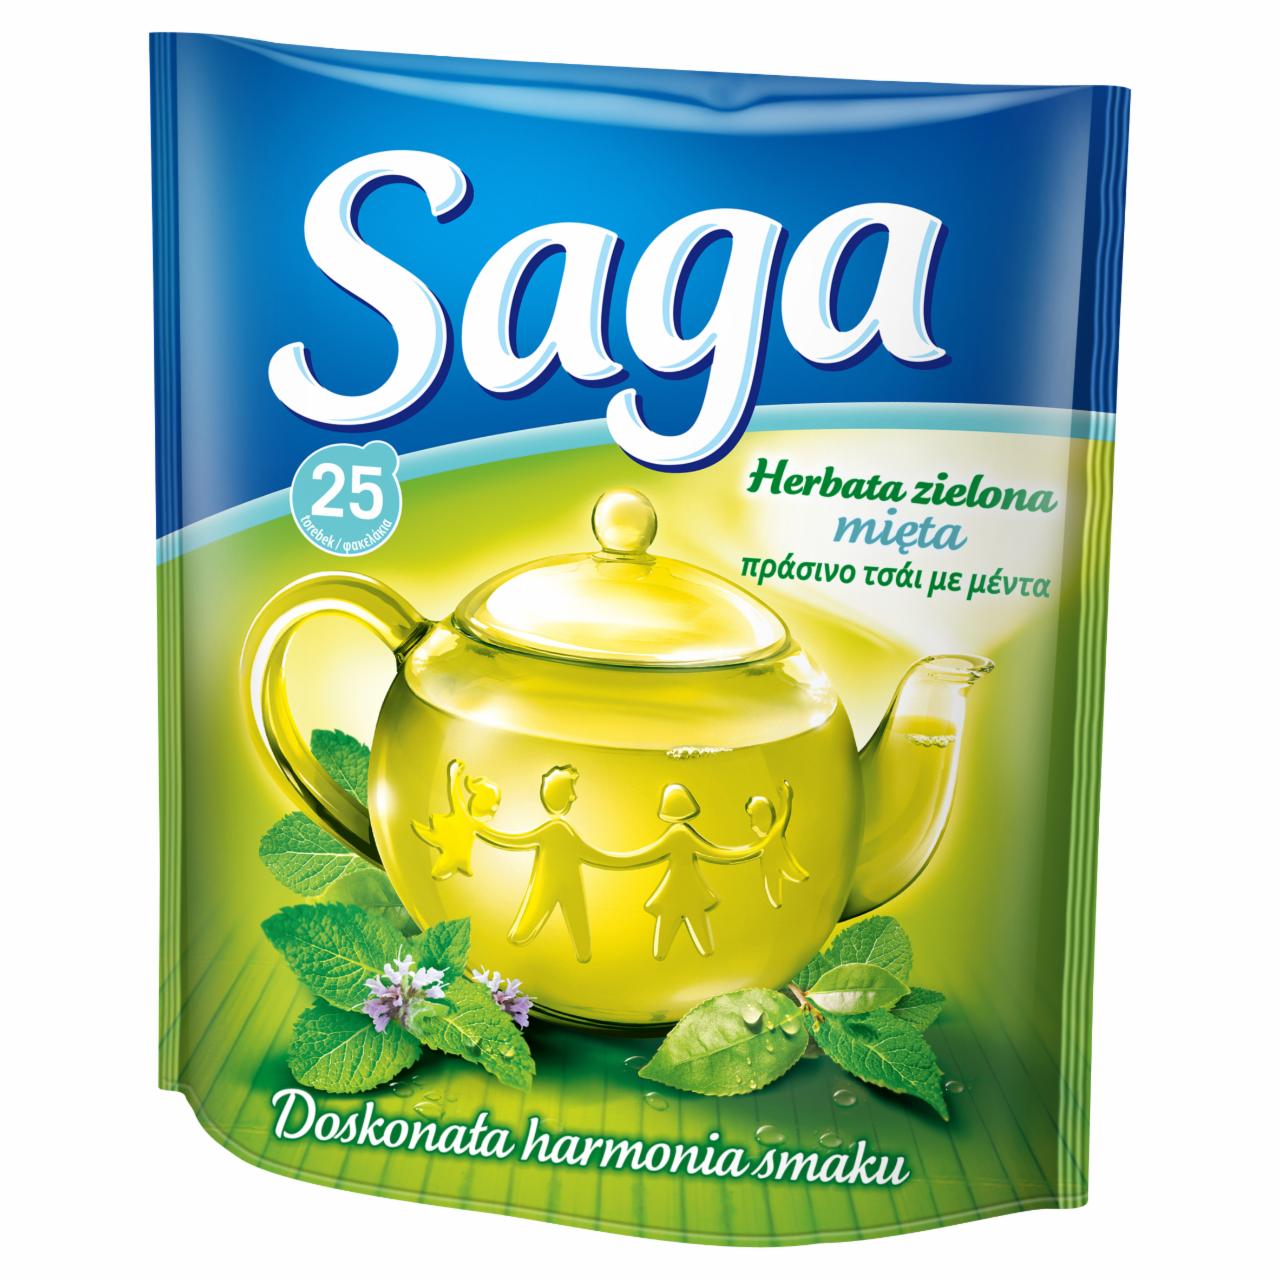 Zdjęcia - Saga Herbata zielona mięta 32,5 g (25 torebek)